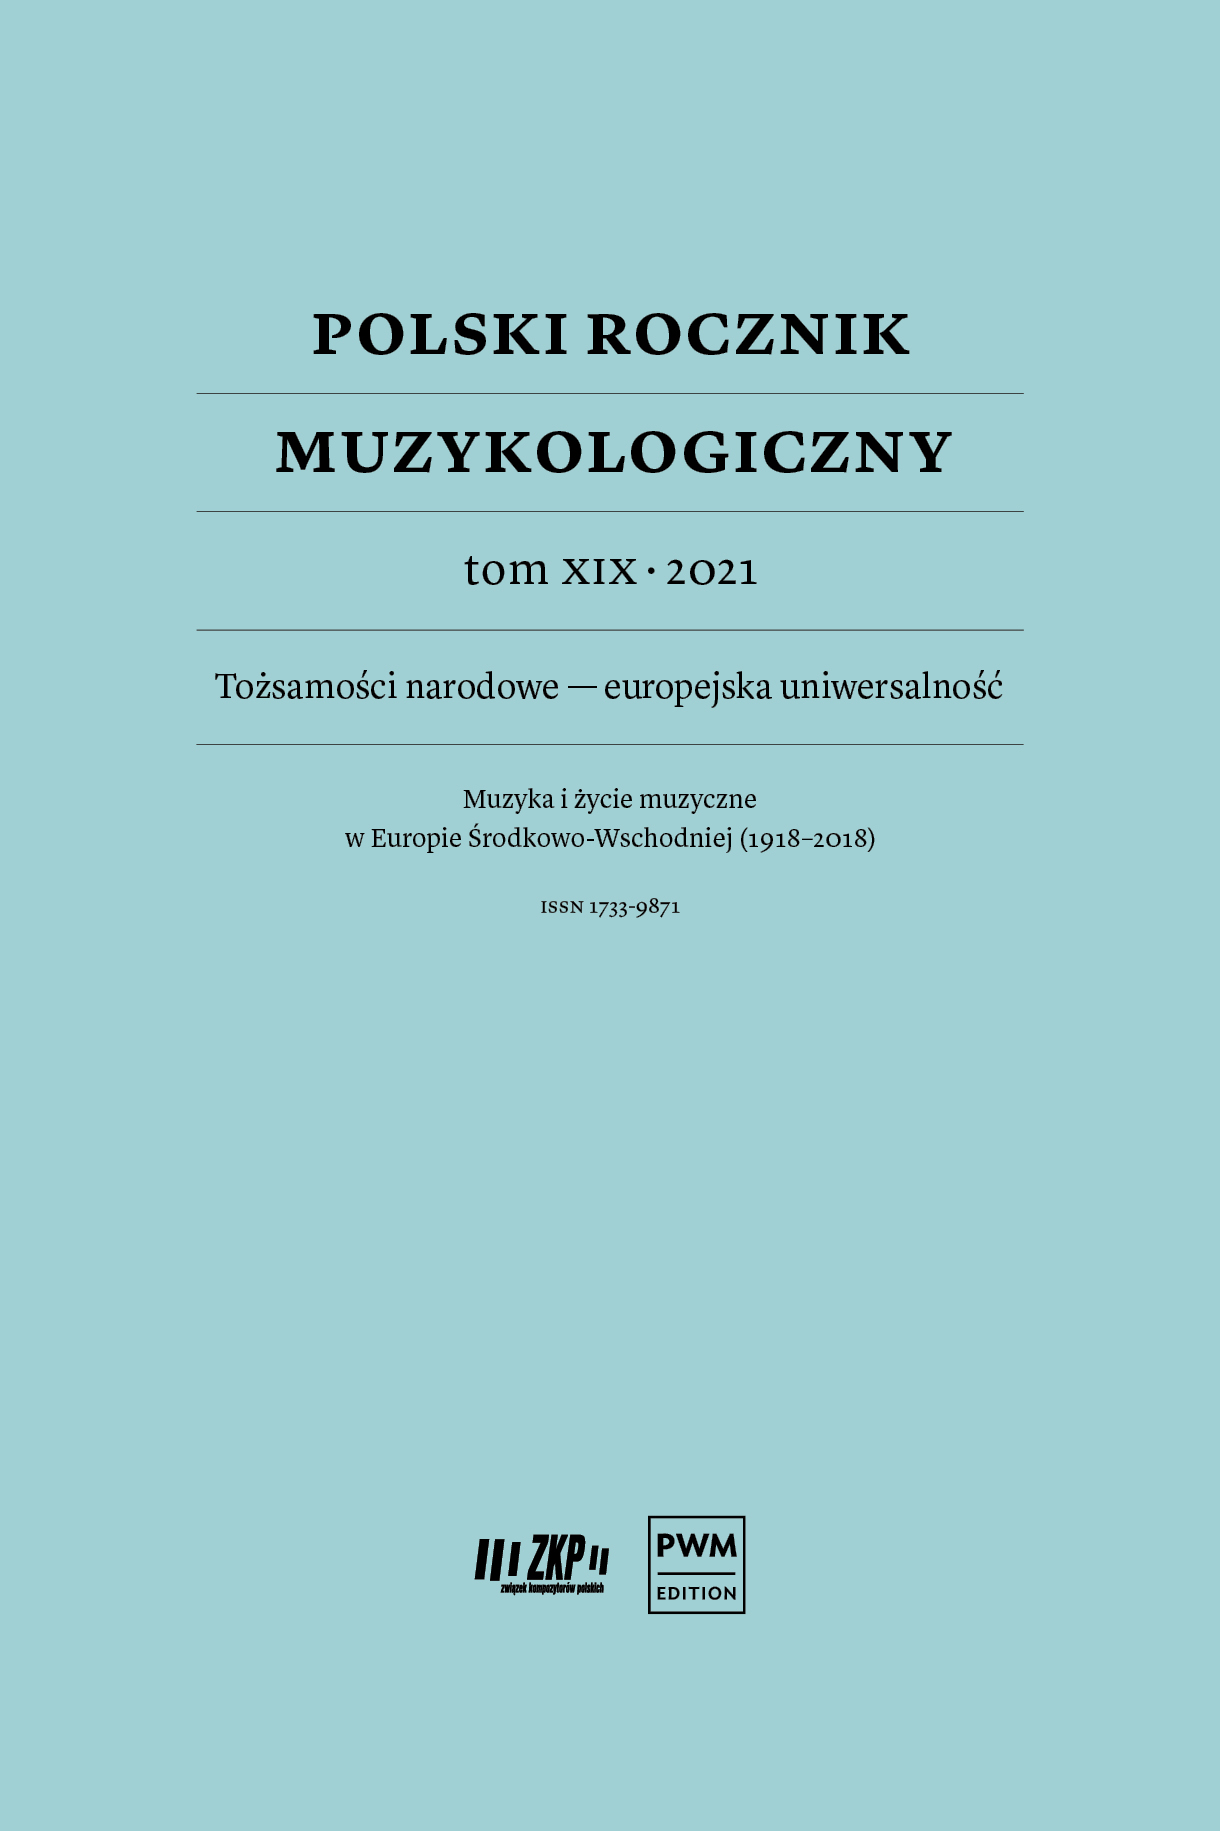 Polski Rocznik Muzykologiczny – Tom XIX – okładka